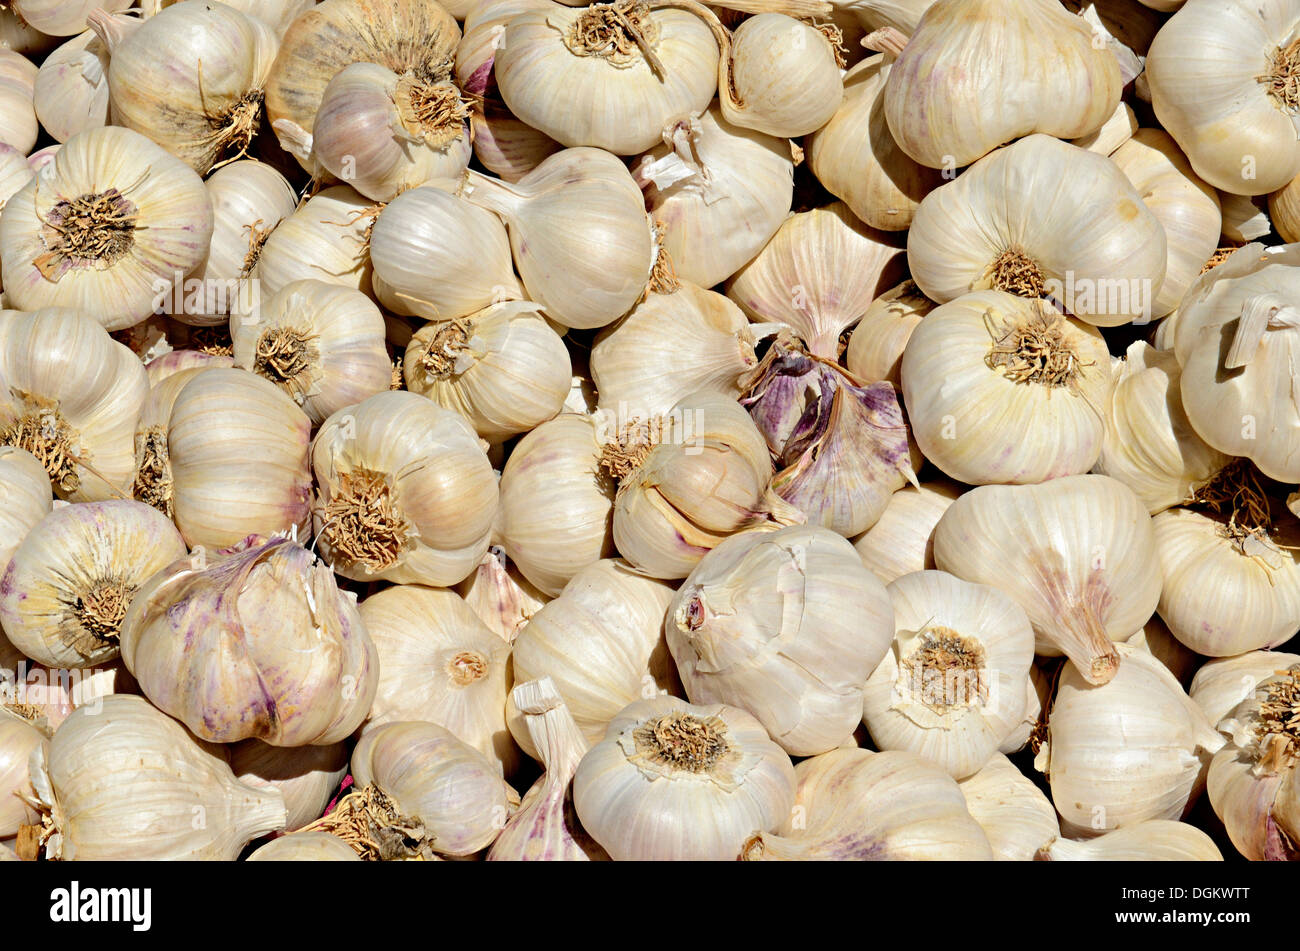 Garlic bulbs, Avila, Avila, Kastilien Leon, Spain Stock Photo